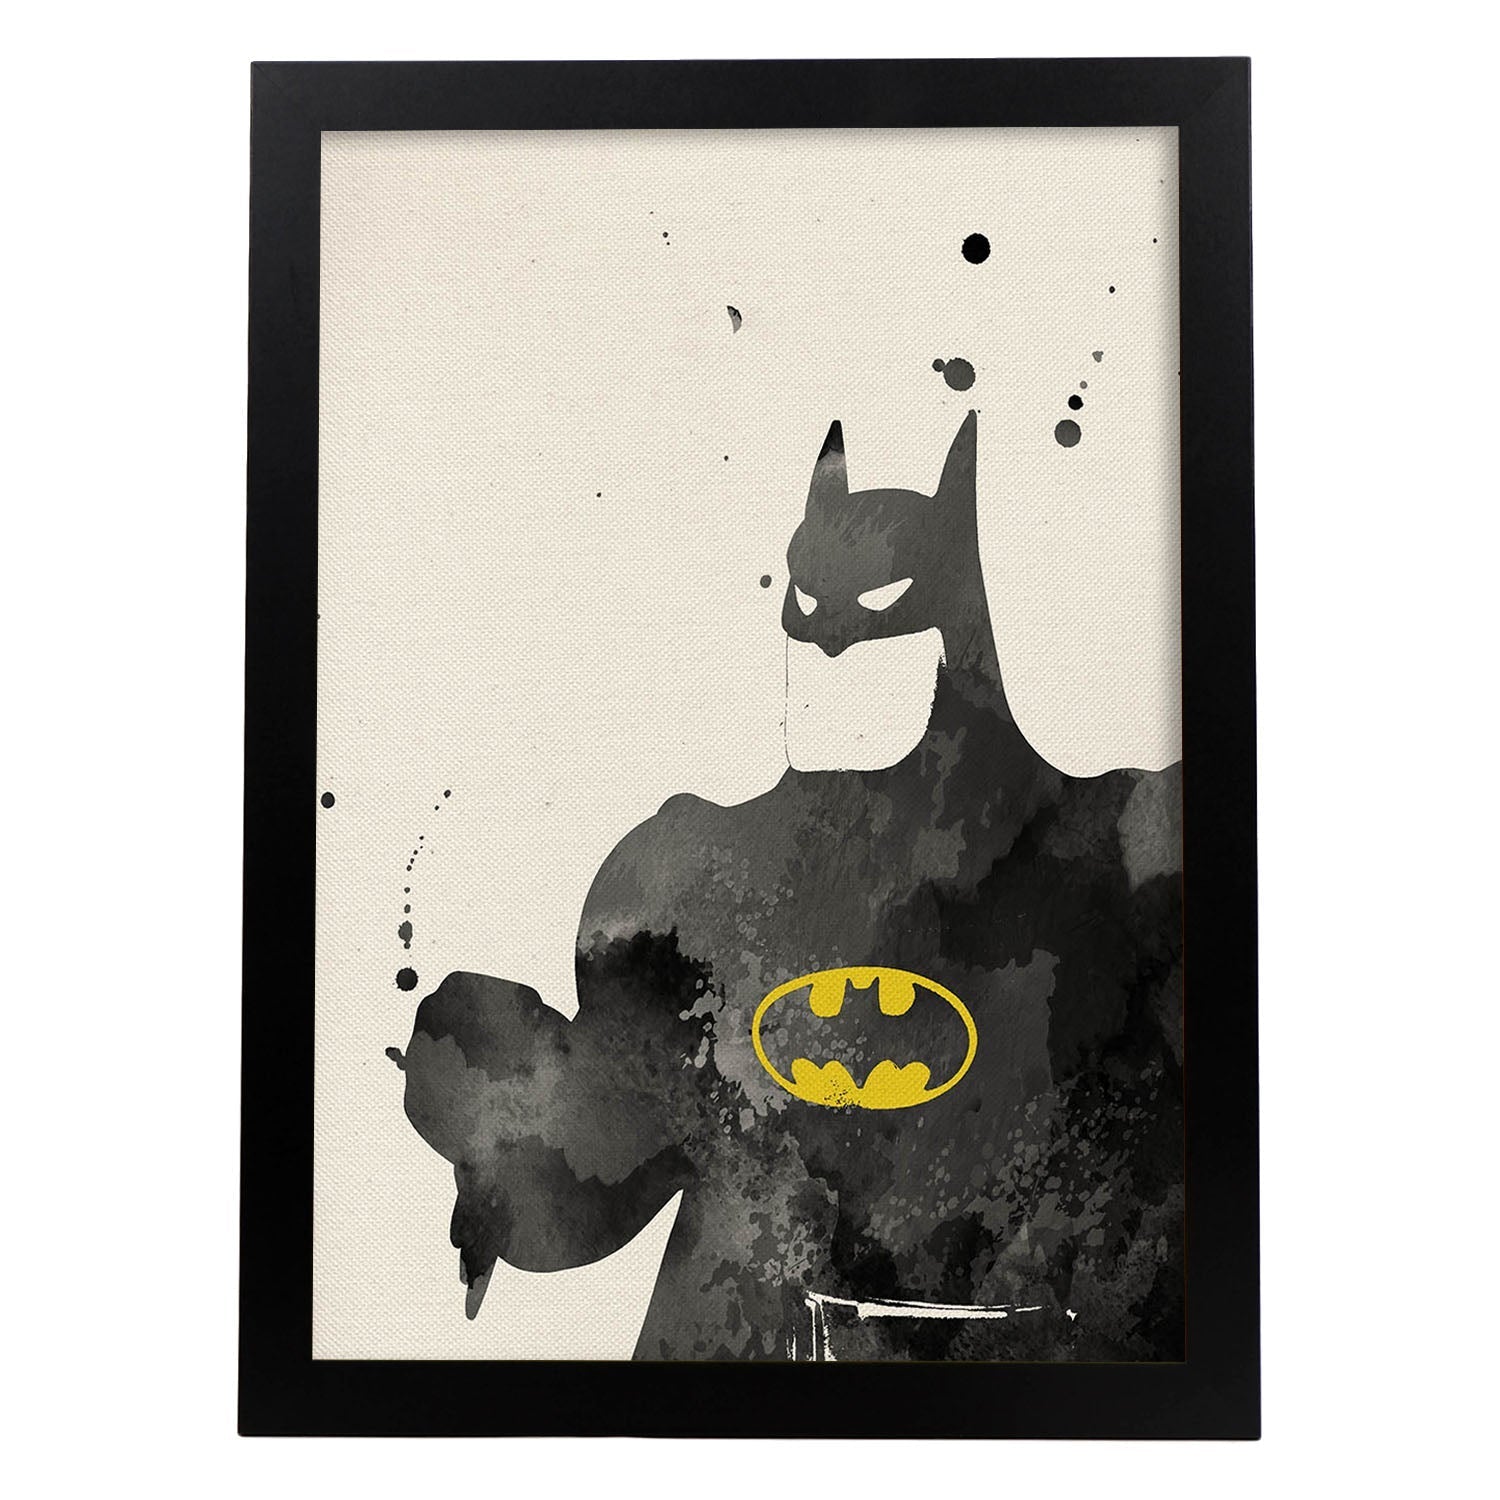 Poster de Batman 2. Láminas de cine, películas, y actores. Posters de películas antiguas con estilo acuarela.-Artwork-Nacnic-A4-Marco Negro-Nacnic Estudio SL